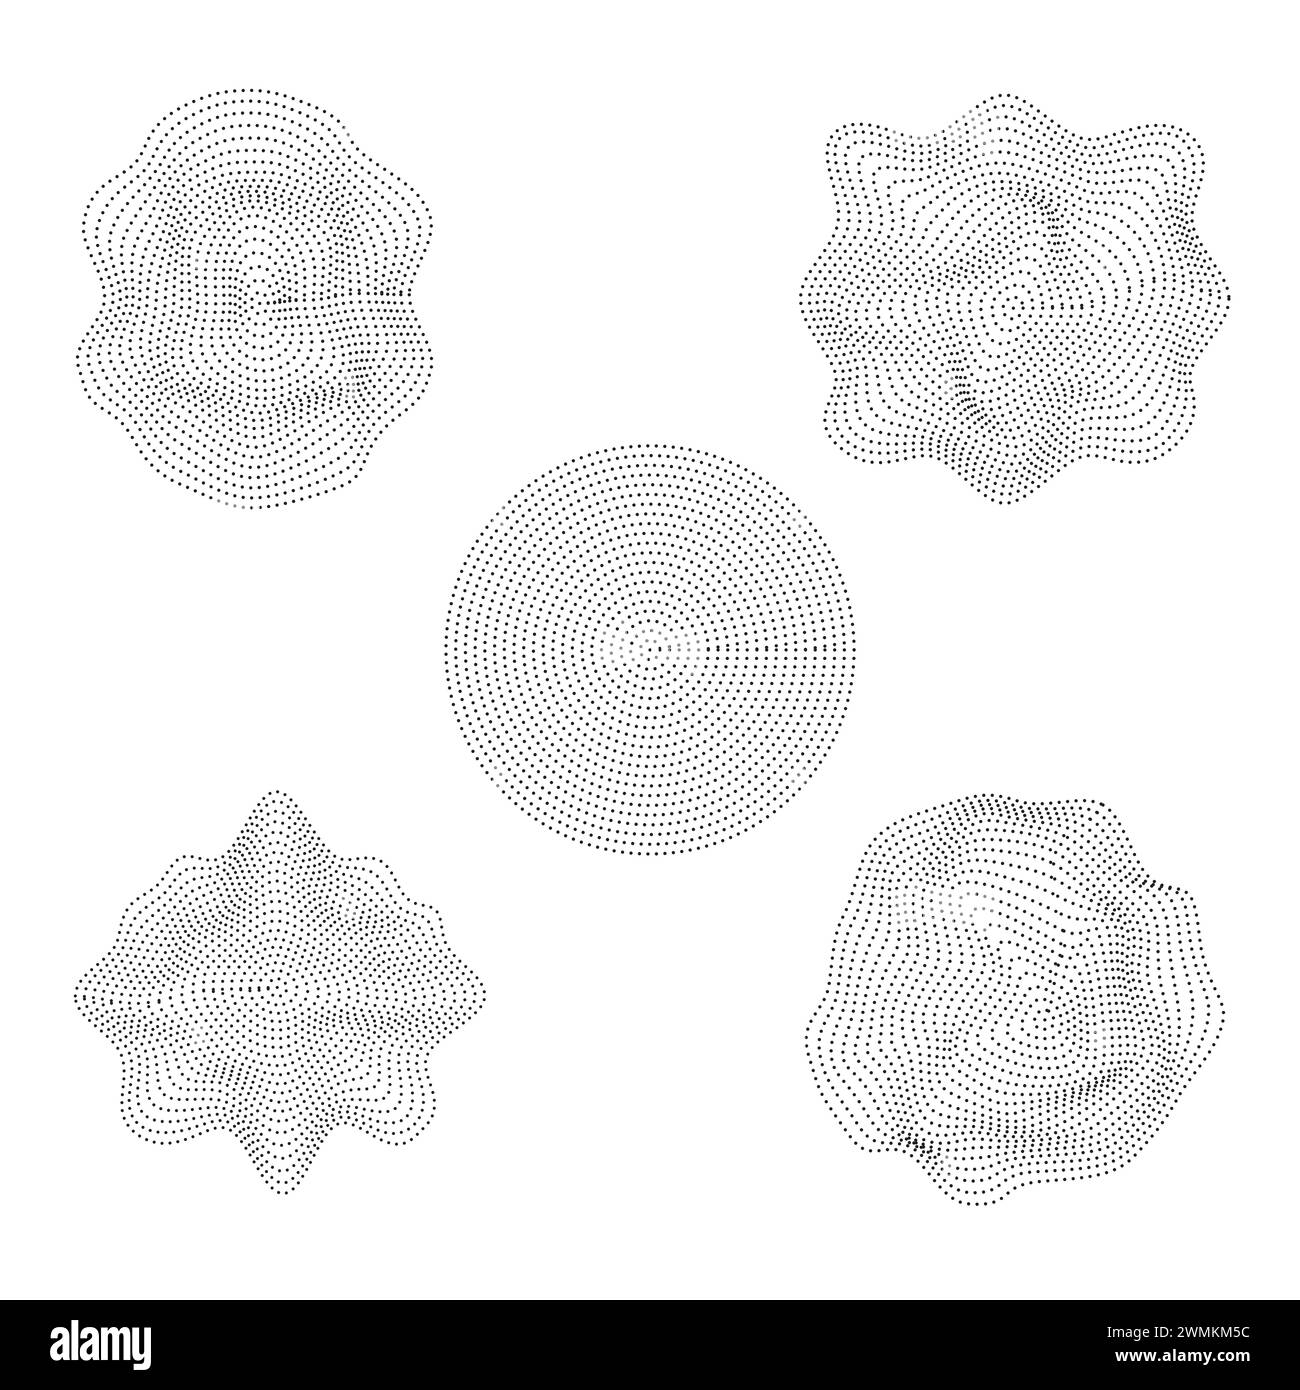 Illustrazione vettoriale della liquefazione ondulata moderna pattern senza cuciture di linee fluide astratte nello stile del modello di copertina della carta da parati. Illustrazione Vettoriale